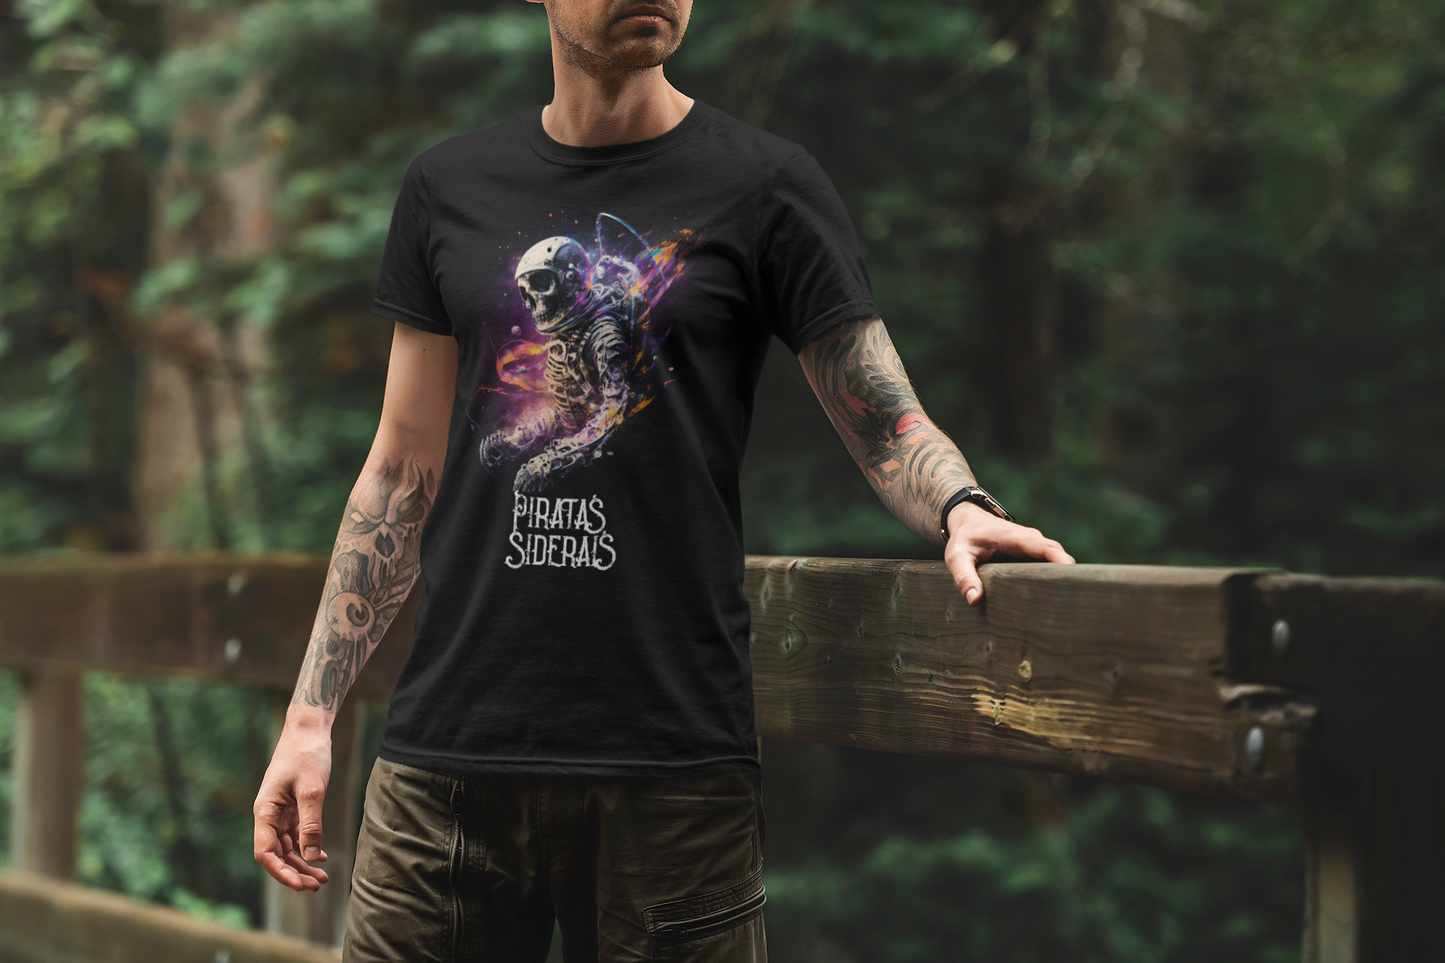 Camiseta Unissex Preta - Astronauta Esqueleto